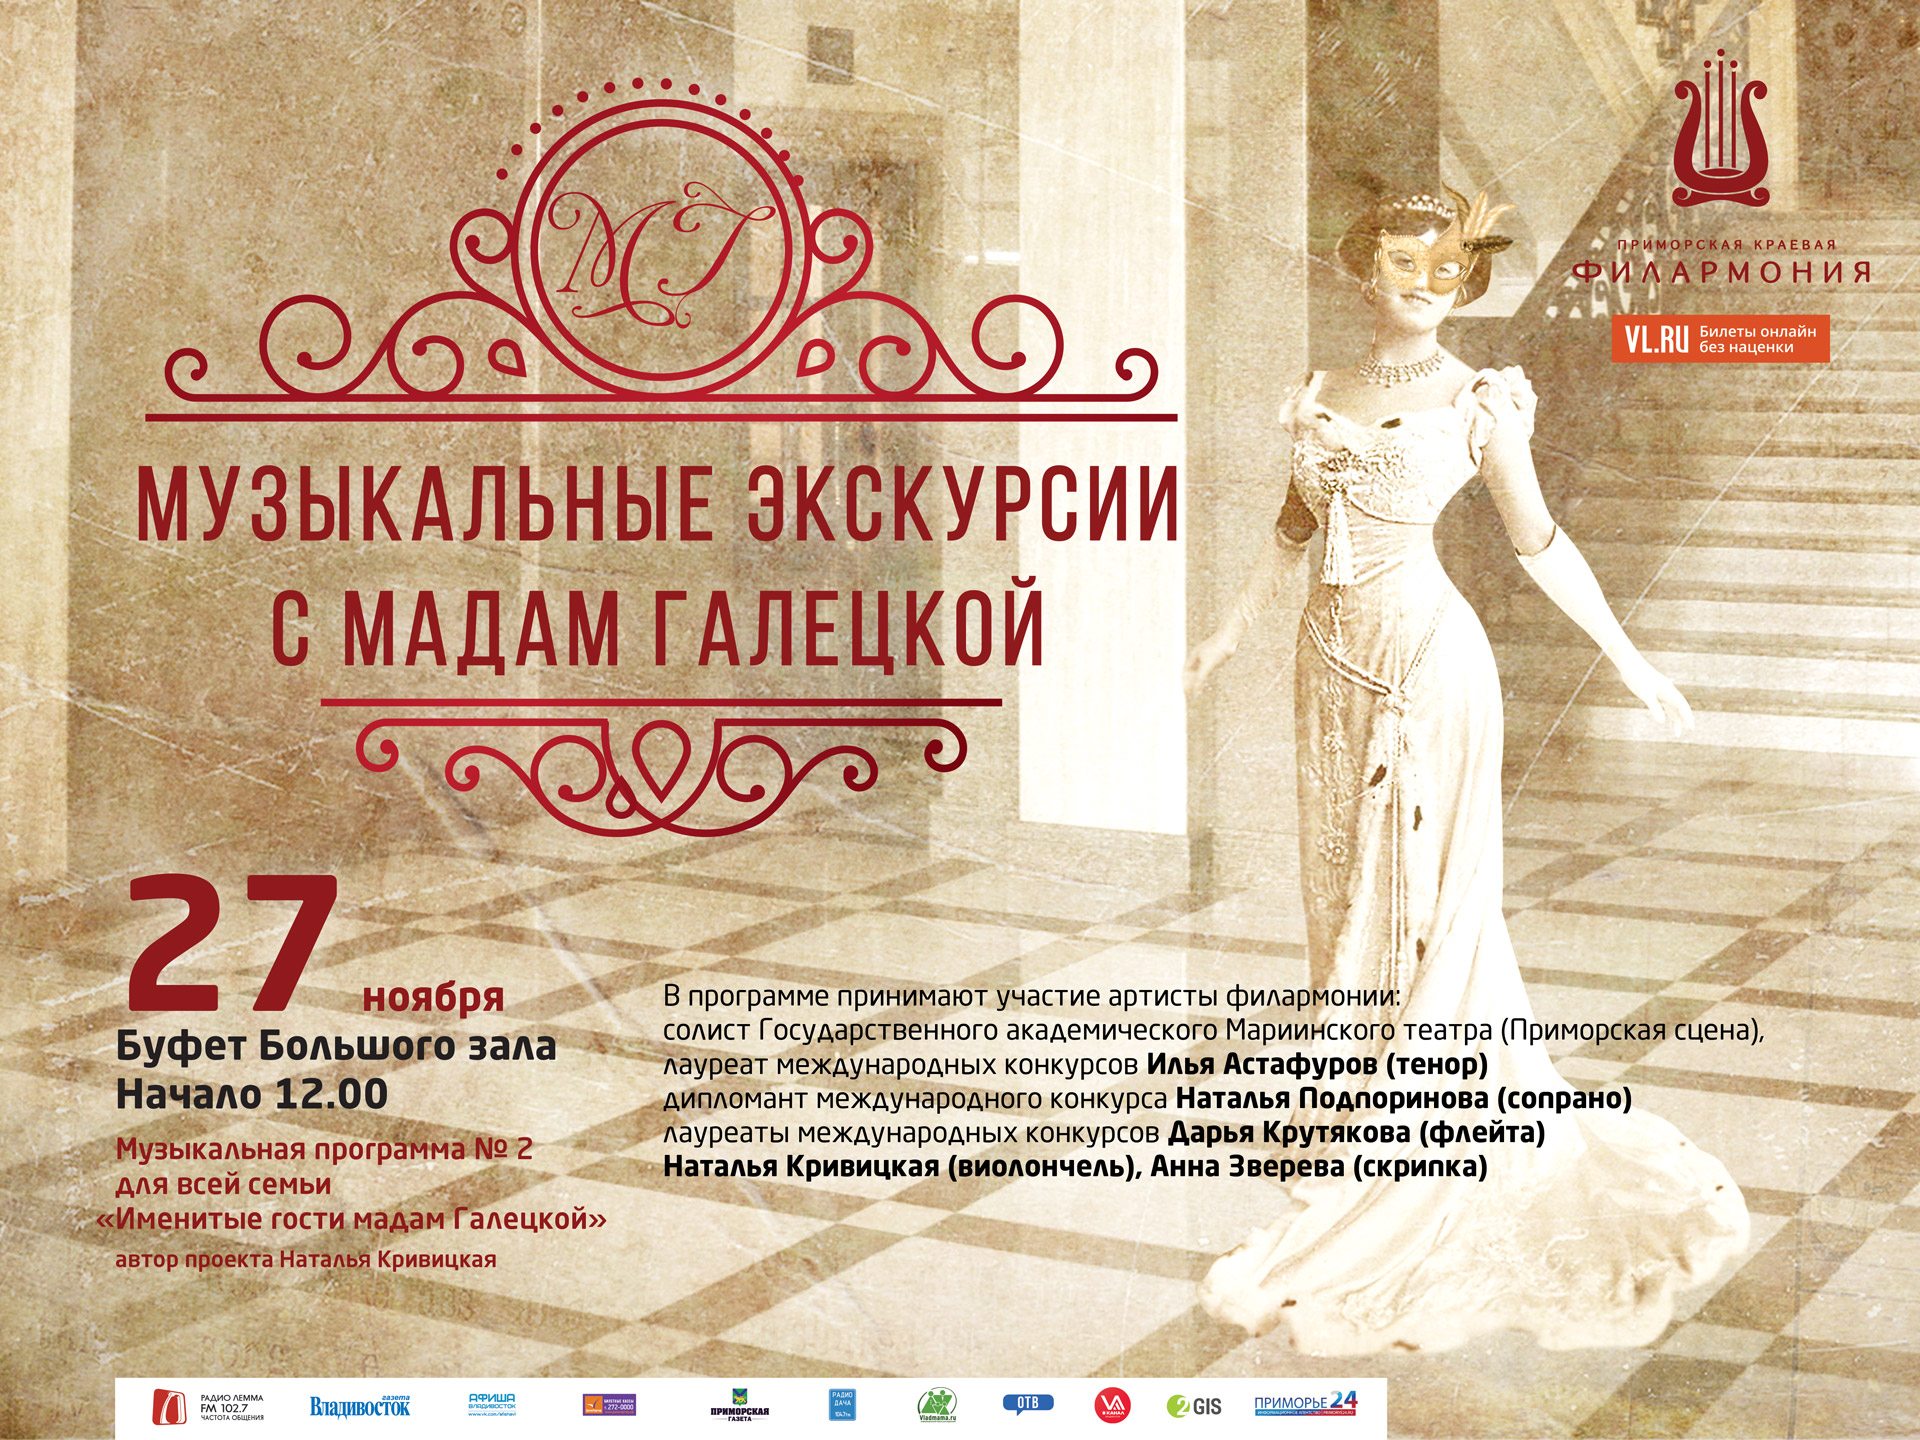 27 ноября  Буфет Большого зала в  12:00 «Музыкальные экскурсии с Мадам Галецкой»